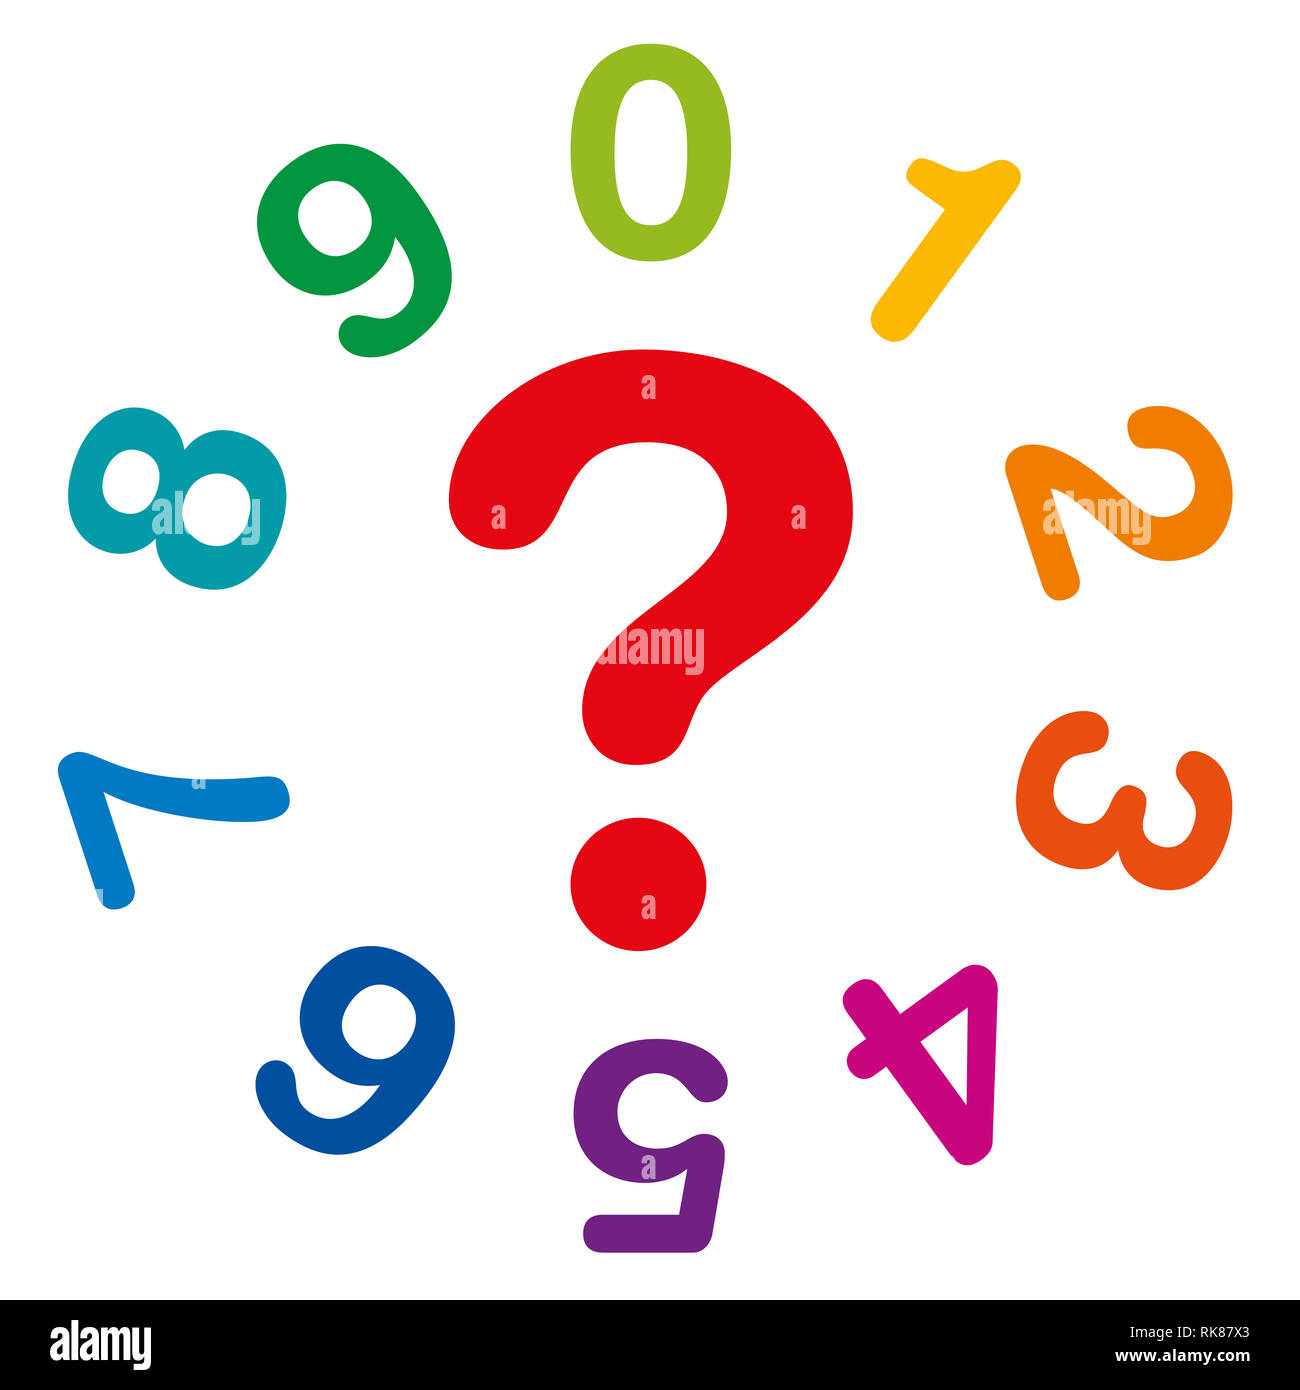 Diez números de colores del arco iris, desde uno a cero, formando un círculo, con signo de interrogación rojo en el medio como símbolo de la numerología y la adivinación. Foto de stock